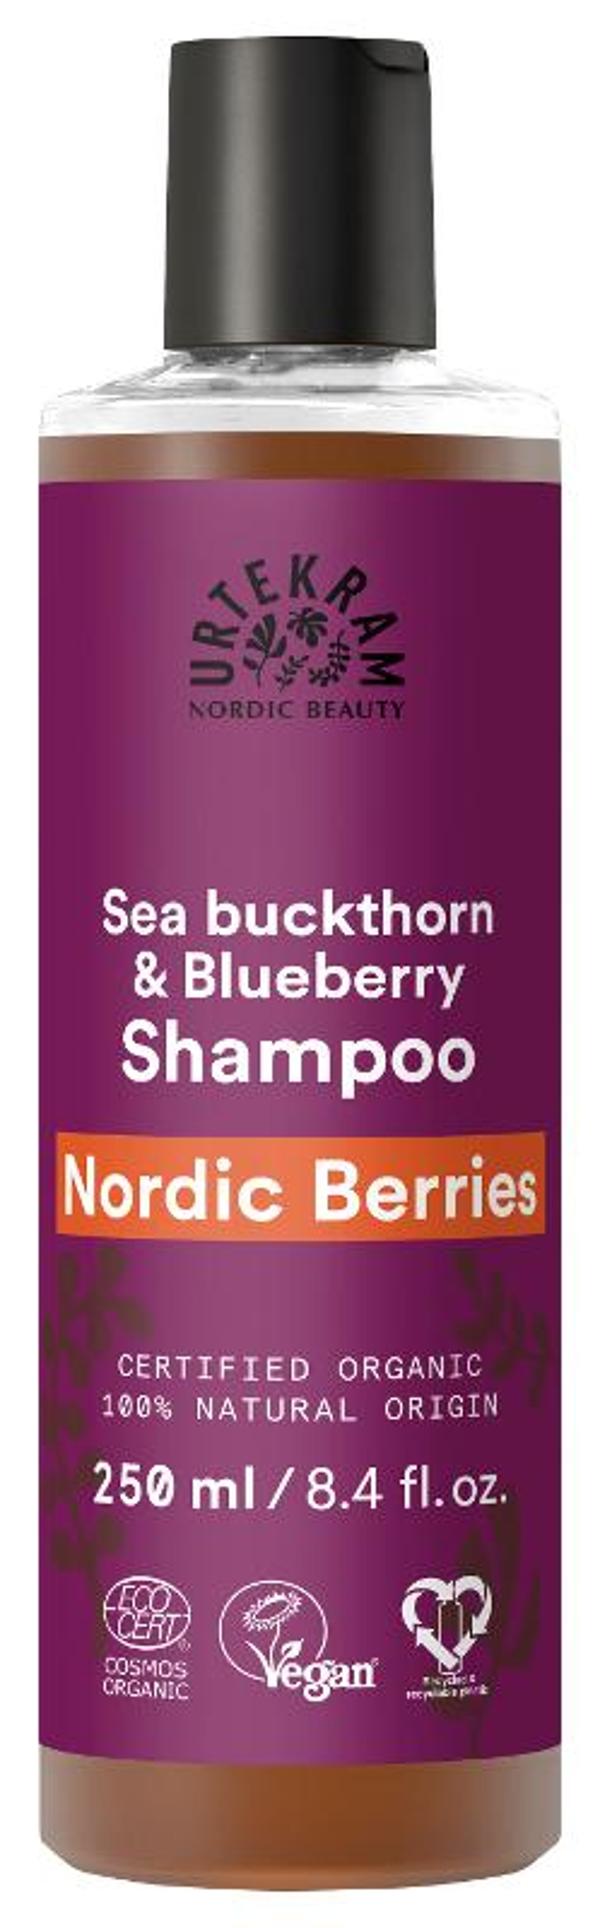 Produktfoto zu Nordische Beeren Shampoo - 250ml